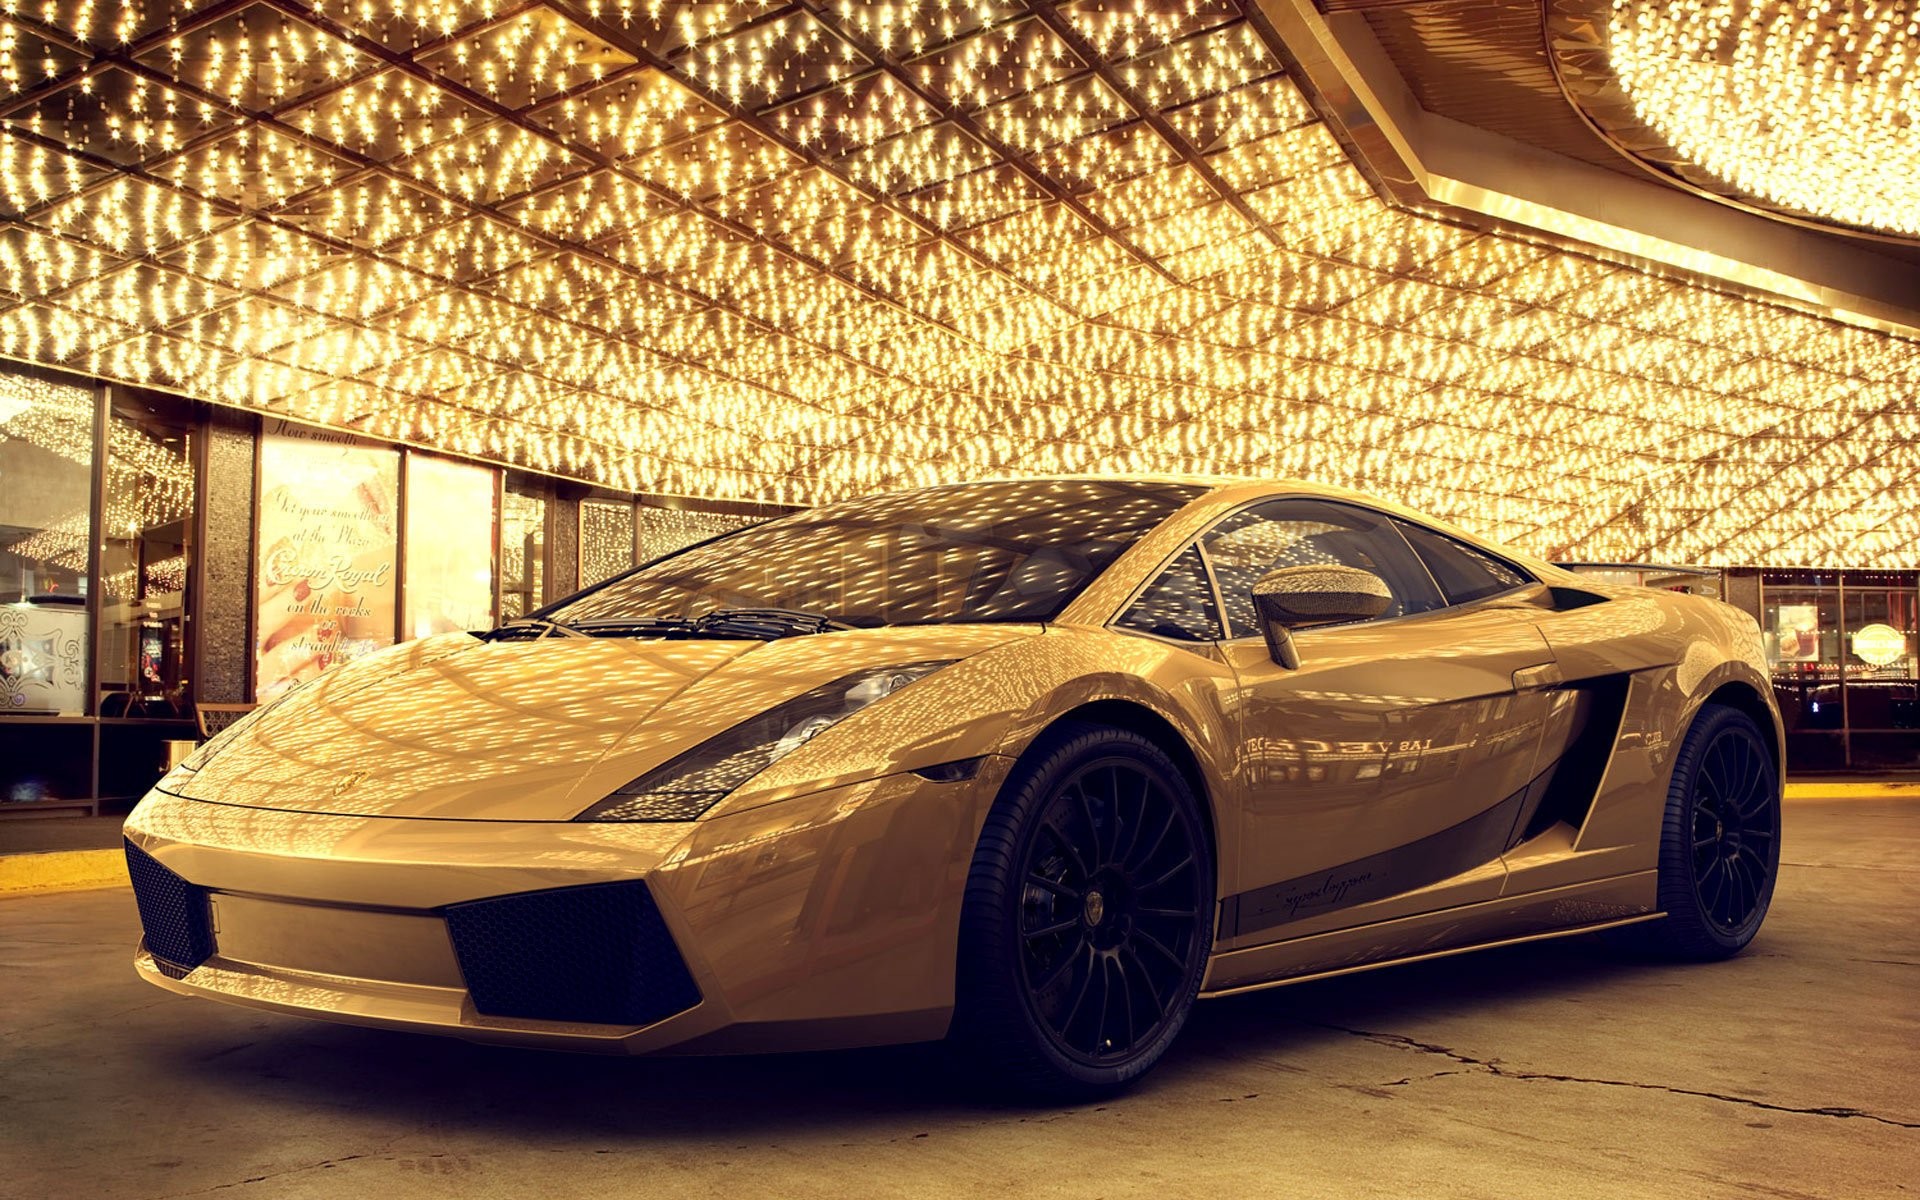 Lamborghini Vàng làm nền cho máy tính, tuyệt vời chưa từng có. Với chất lượng hình ảnh tuyệt đẹp, chiếc xe này sẽ khiến bạn không khỏi ấn tượng khi trang trí cho máy tính của mình.